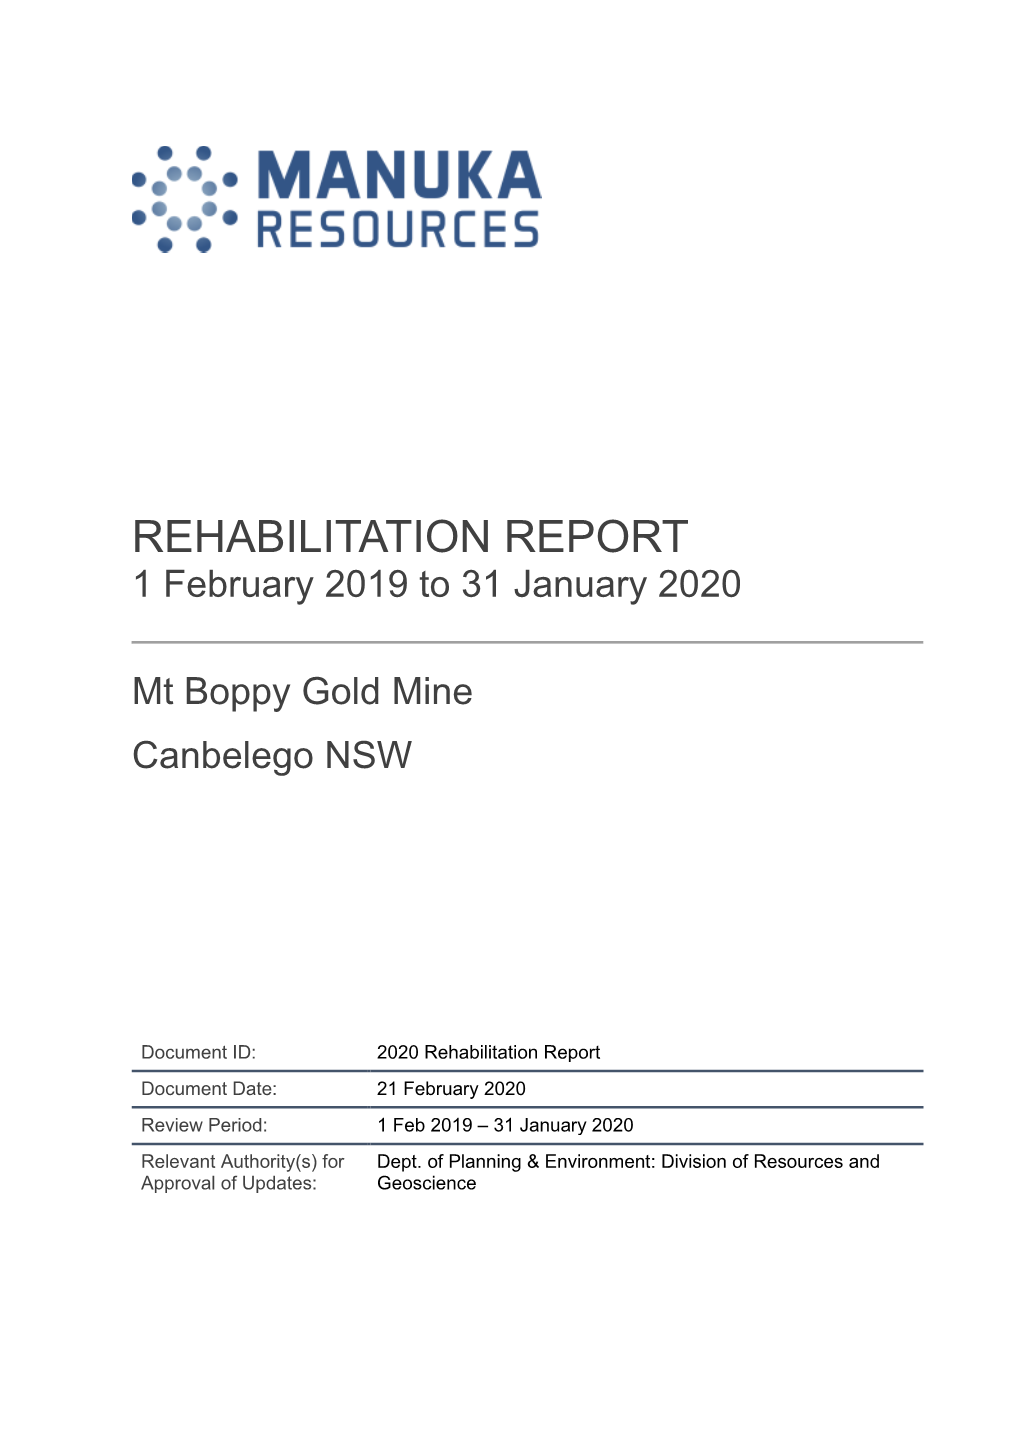 REHABILITATION REPORT 1 February 2019 to 31 January 2020